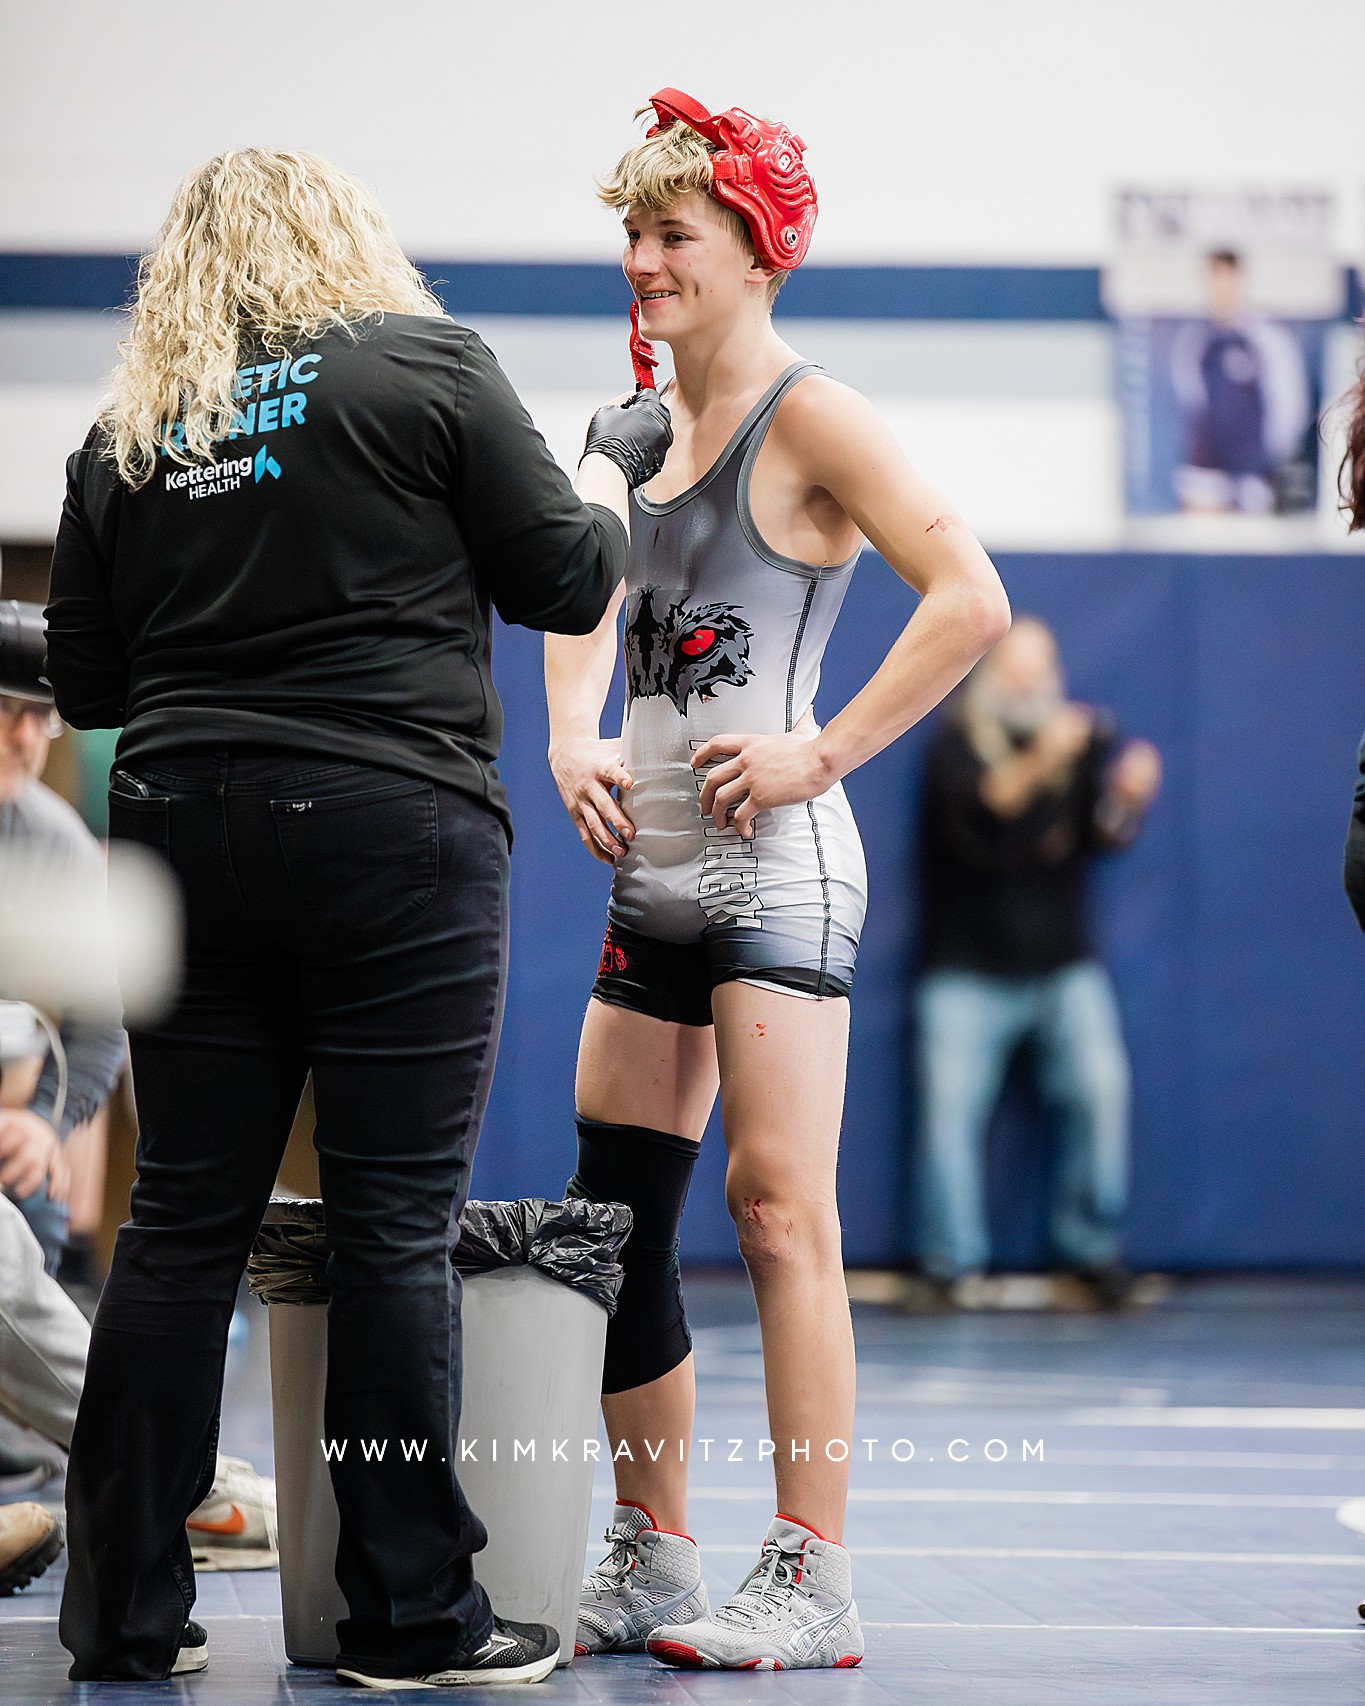 Ohio high school wrestling Kim kravitz